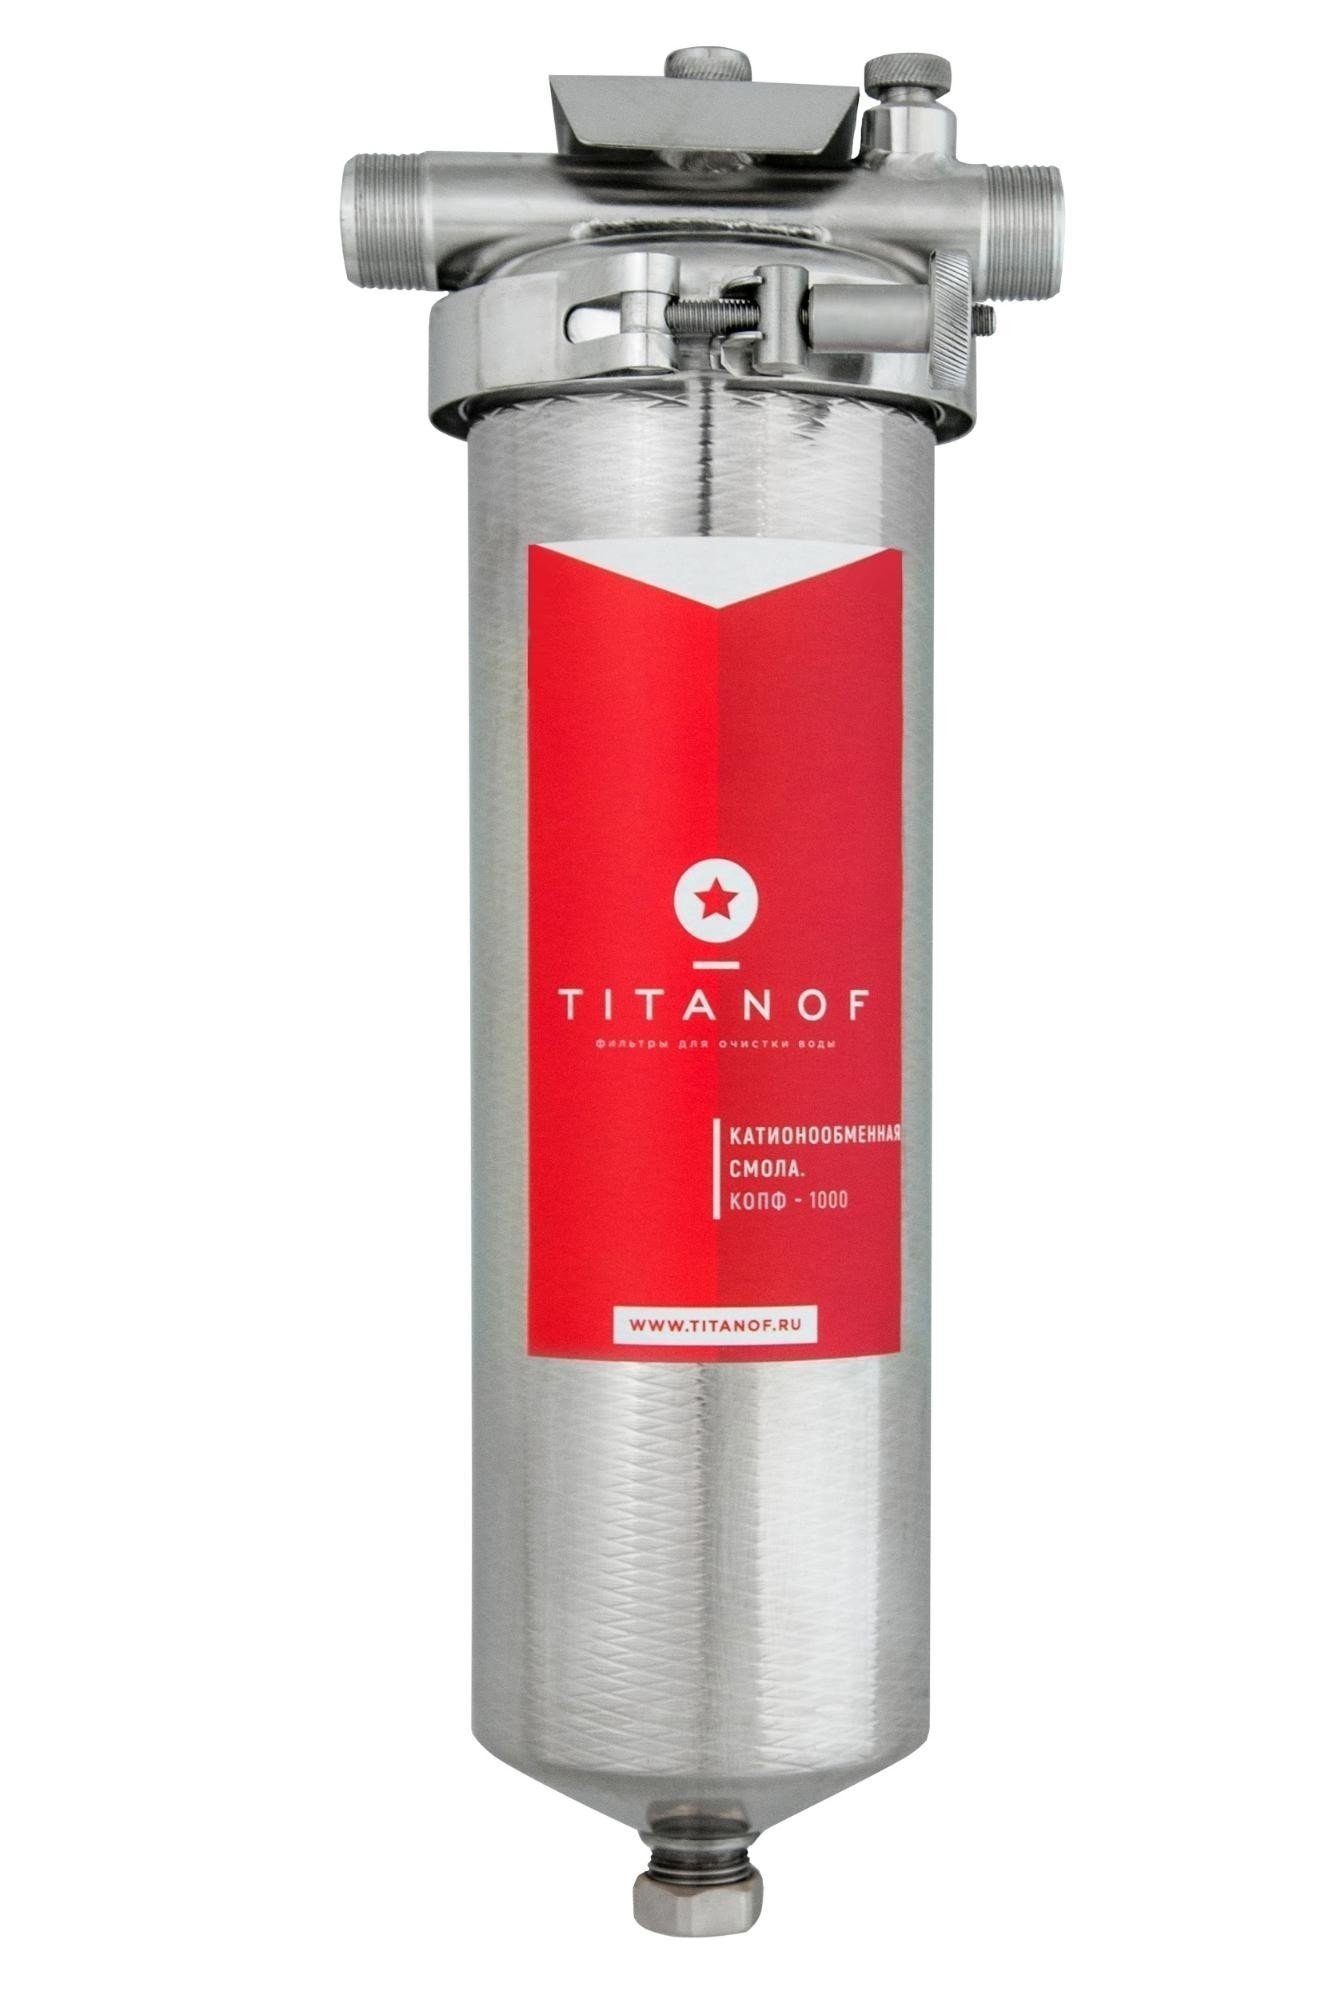 Titanoff фильтр для воды